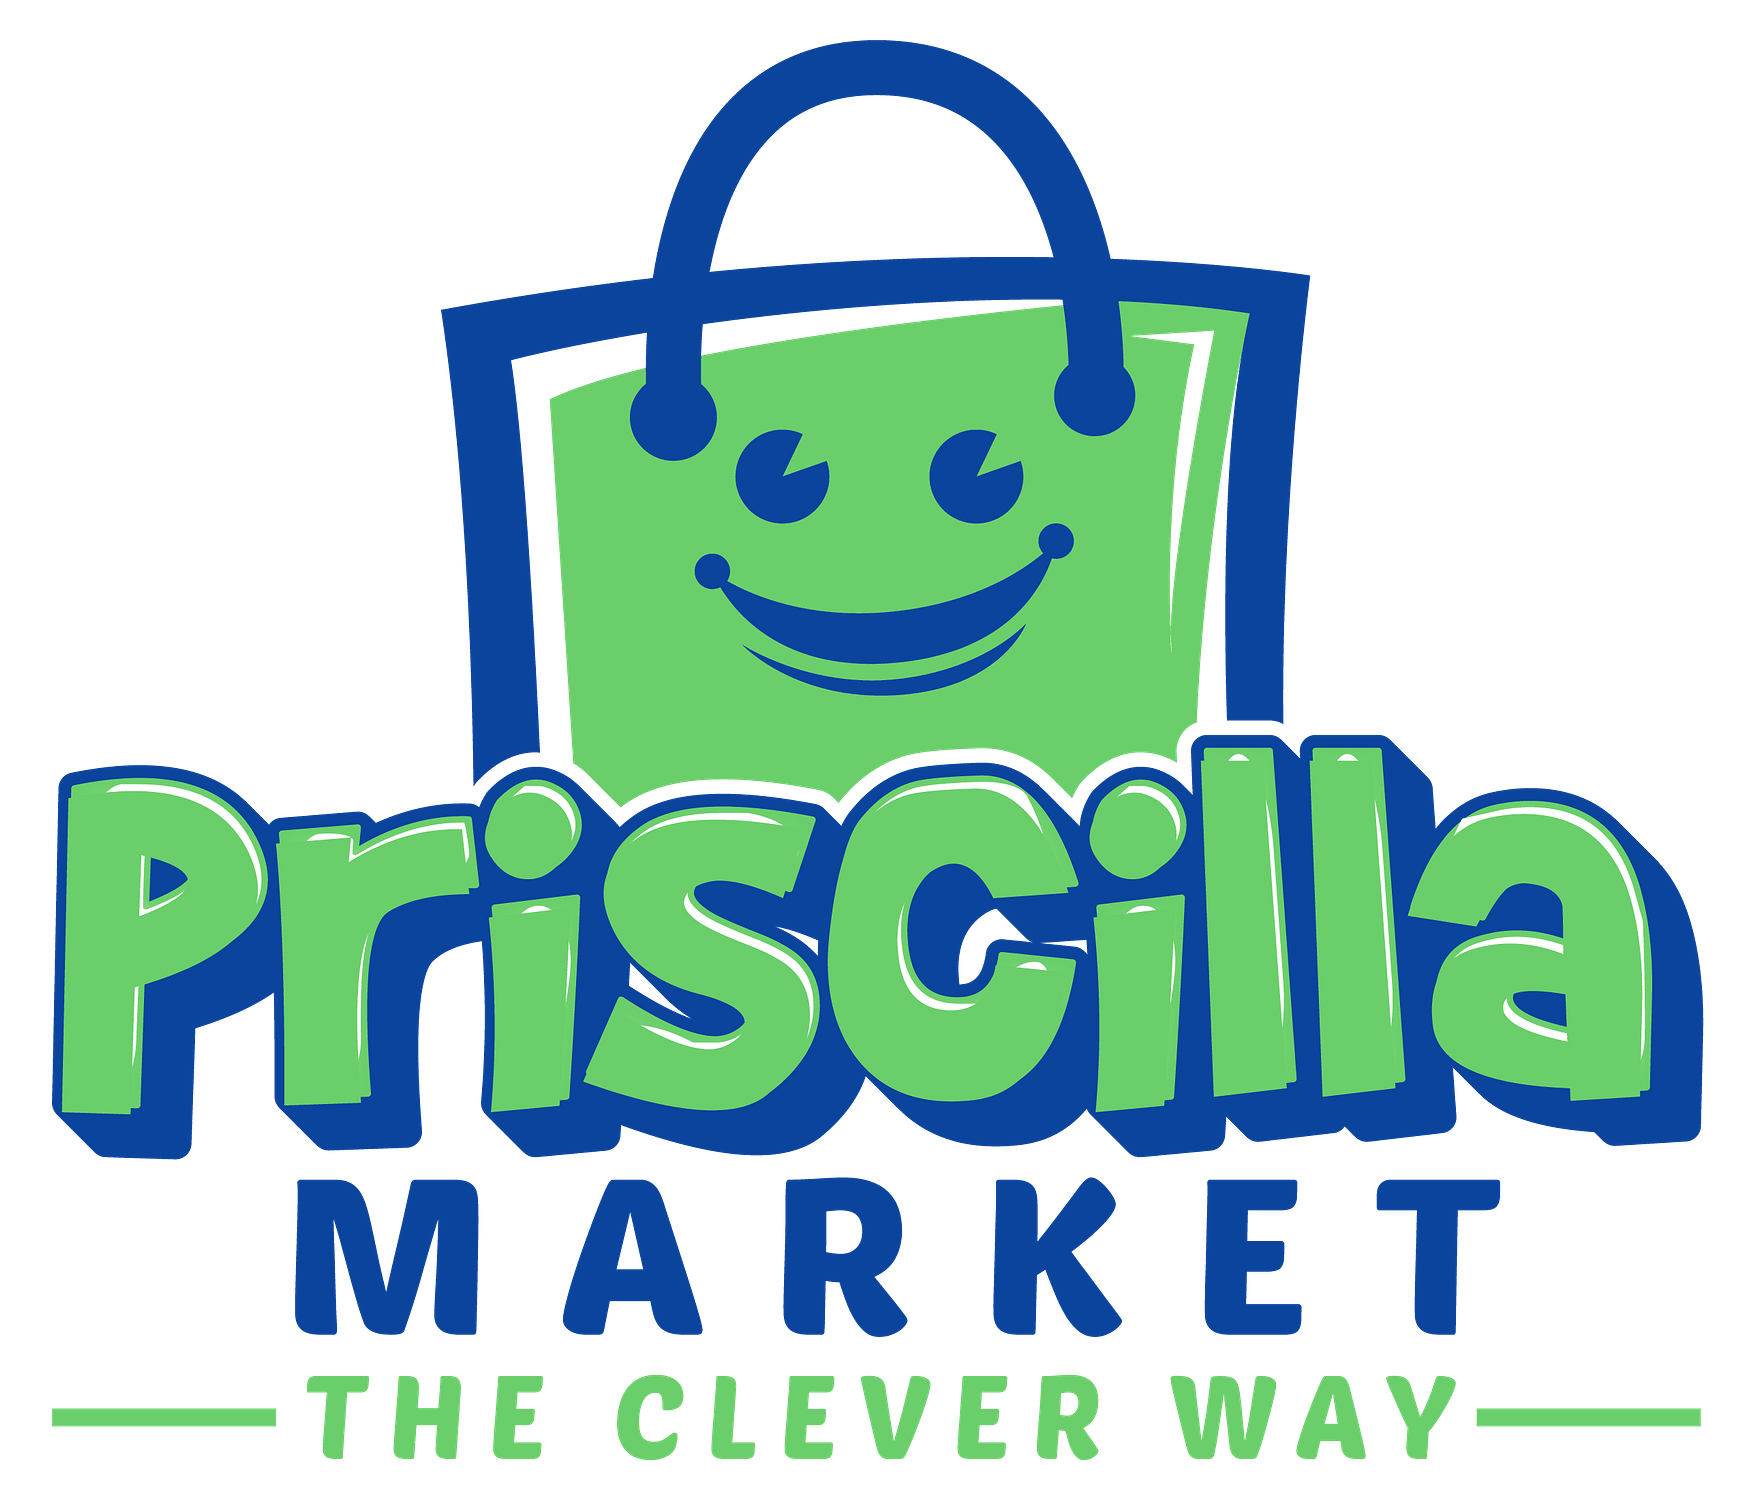 Priscilla Market Store